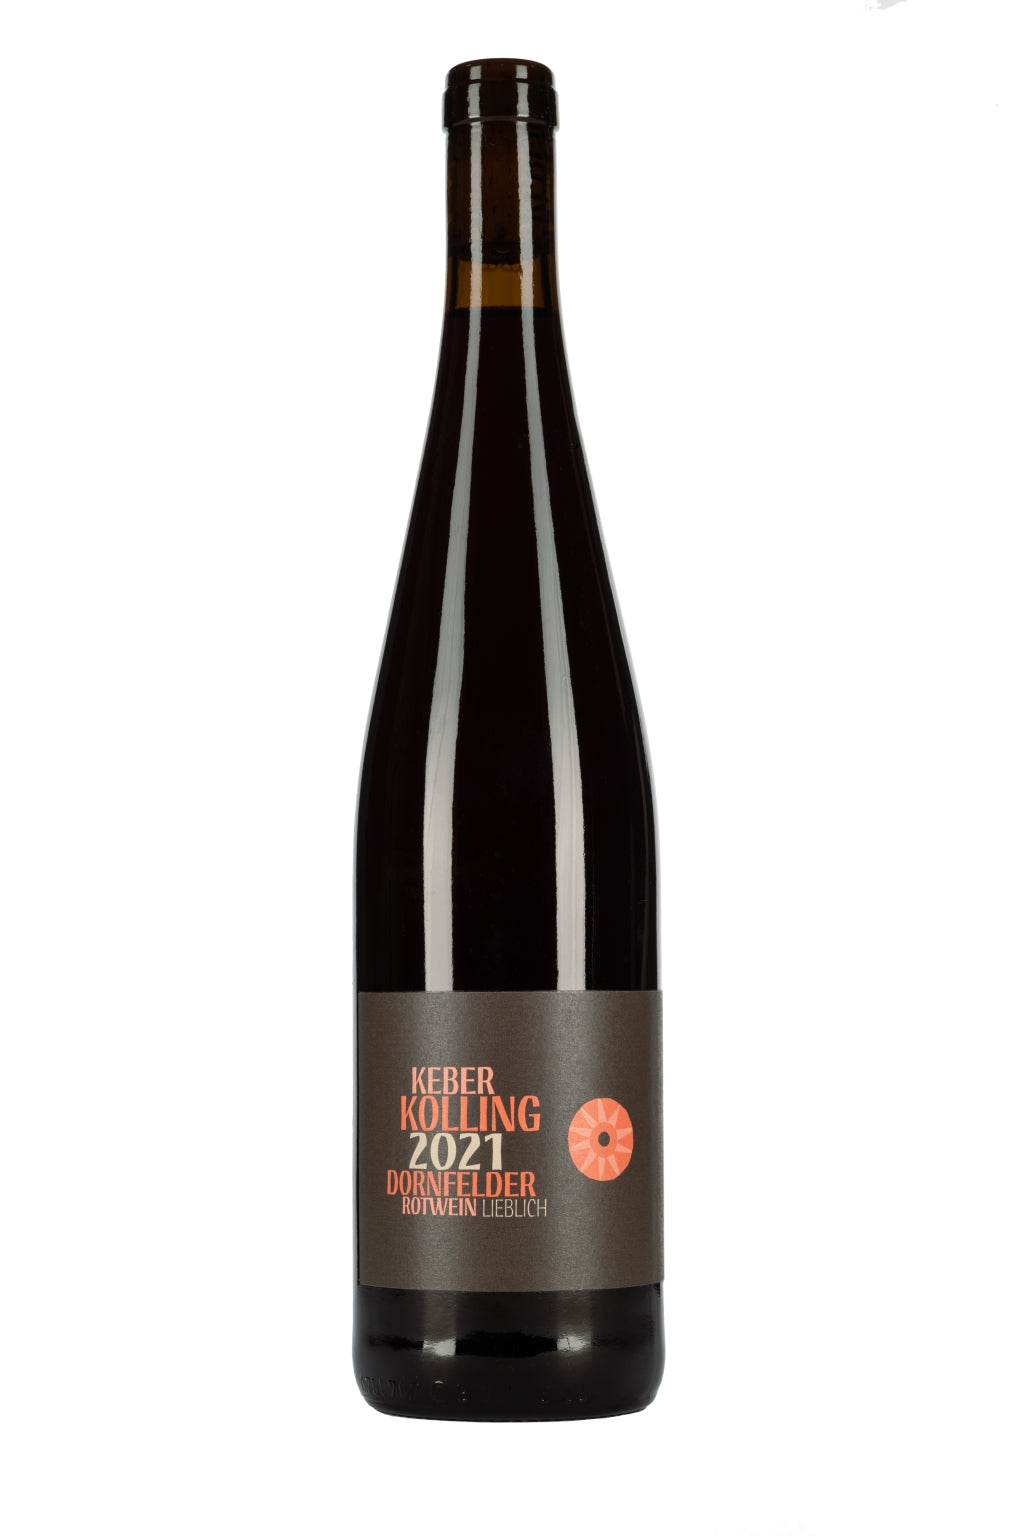 2021er Dornfelder Rotwein lieblich – Weingut Keber Kolling